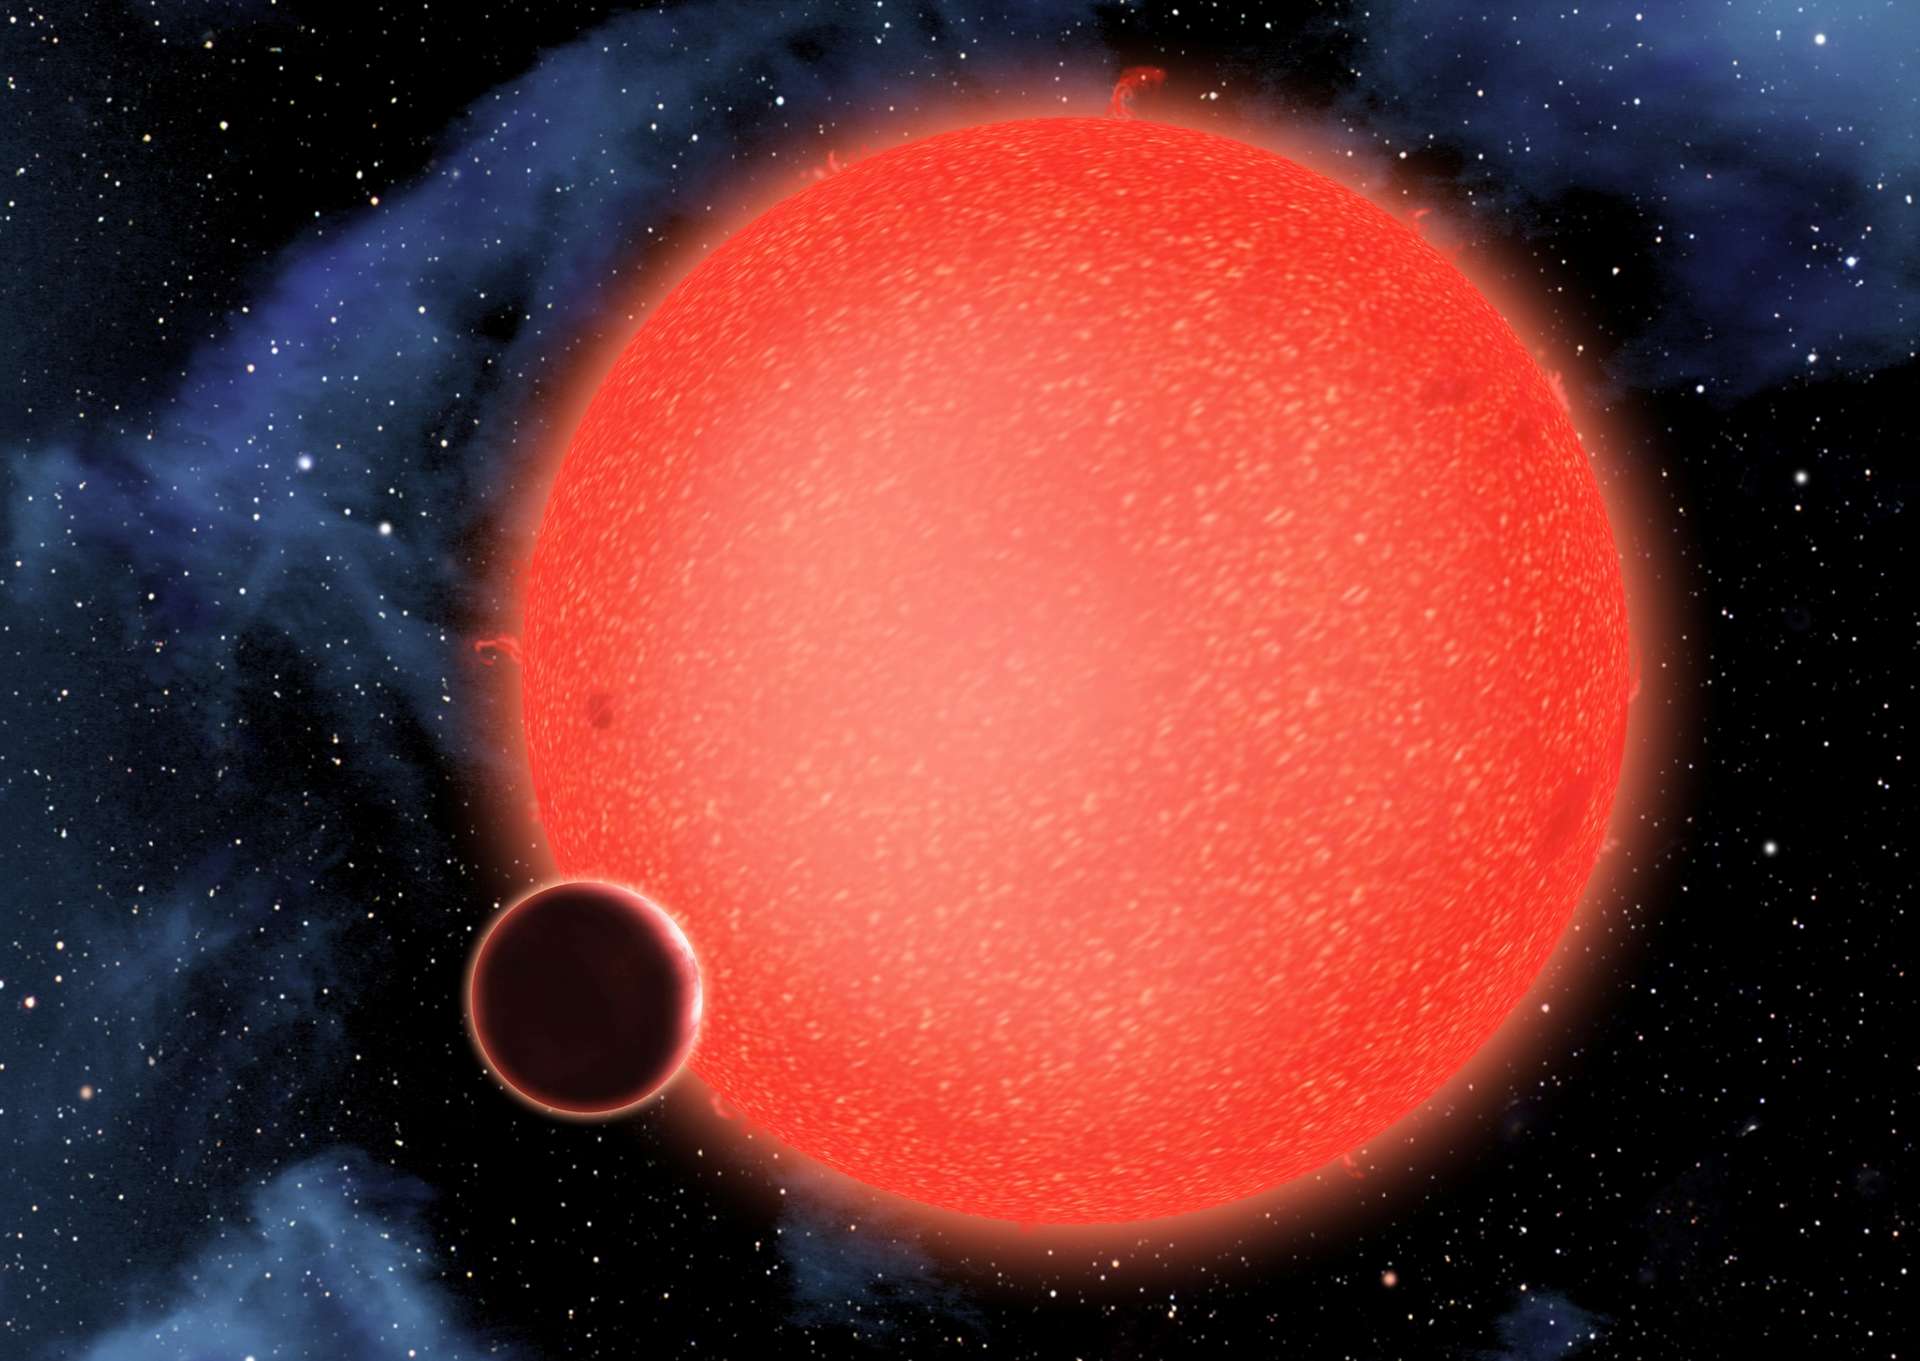 In laboratorio abbiamo ricostruito l’atmosfera di un pianeta extrasolare osservato da James Webb